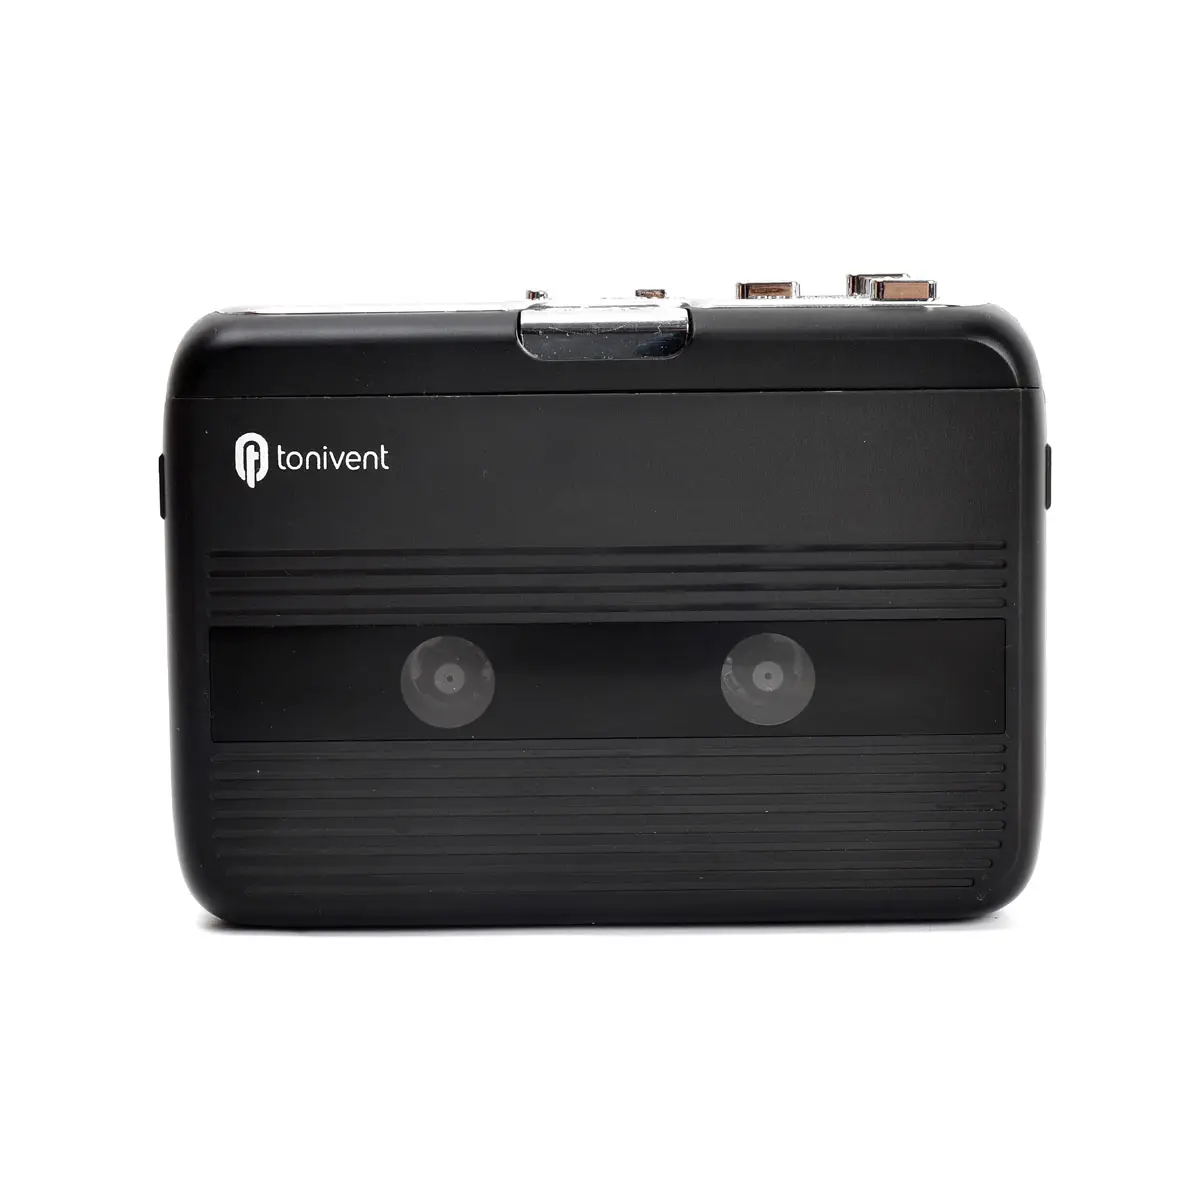 Bluetooth máy nghe nhạc MP3 Bluetooth Cassette ghi xách tay độc lập Cassette người chơi FM Đài phát thanh Bluetooth máy nghe nhạc